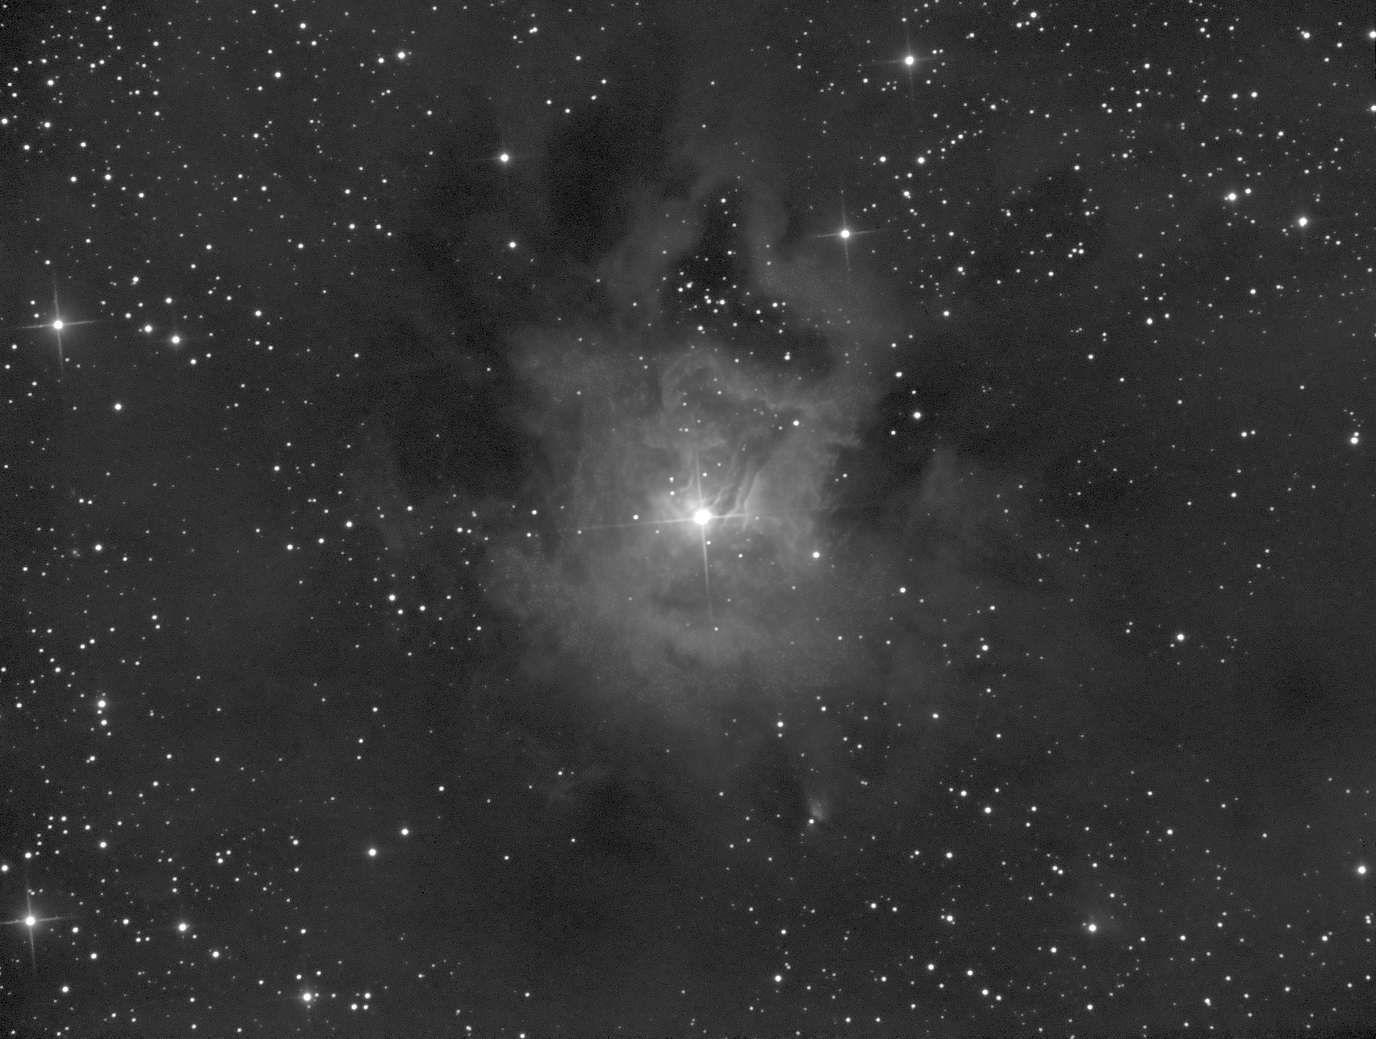 NGC 7023_Iris nebula_CLS.jpg